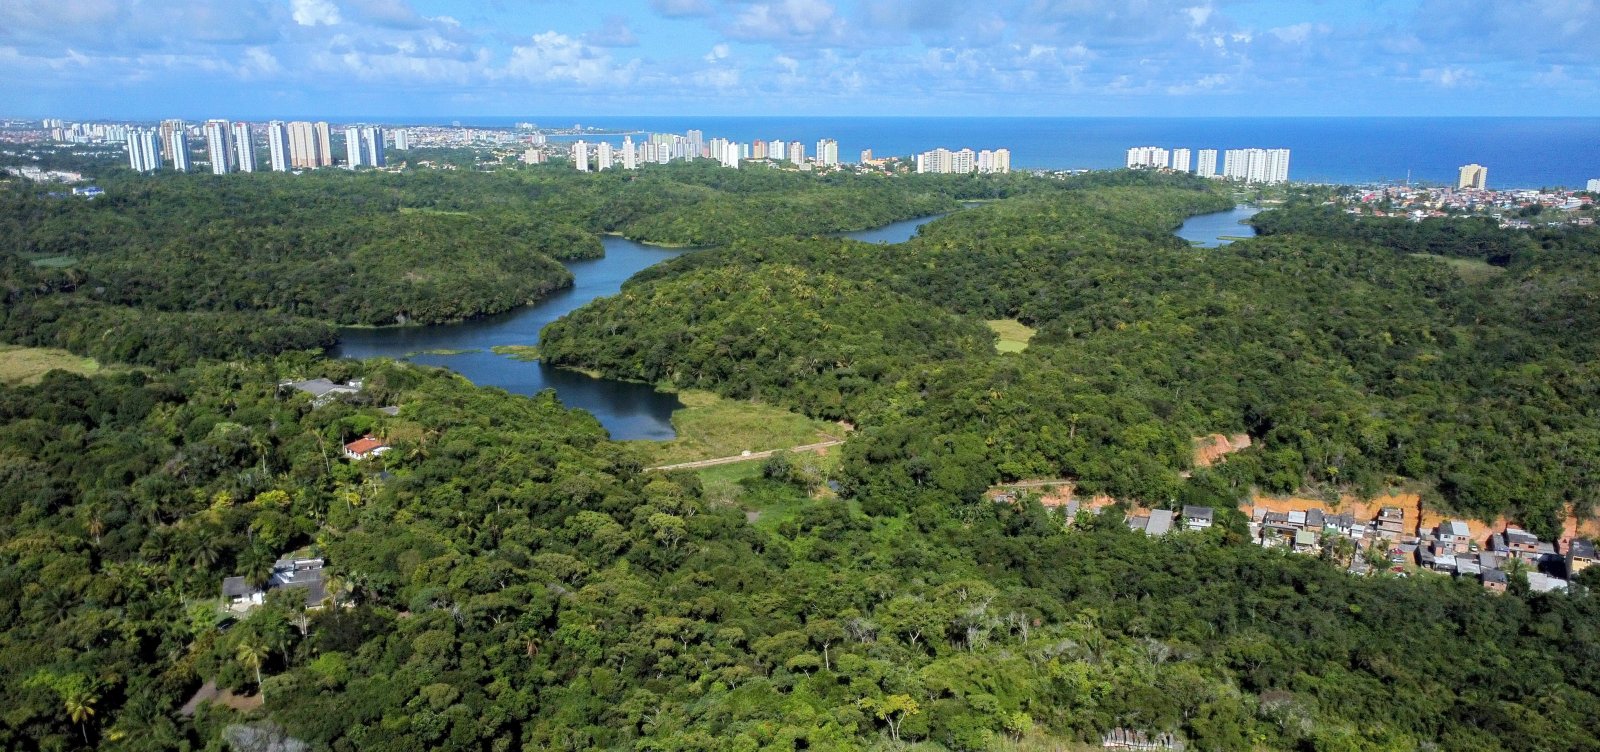 Reserva de resistência: Há 50 anos enfrentando especulação imobiliária, Parque de Pituaçu vai passar por revitalização